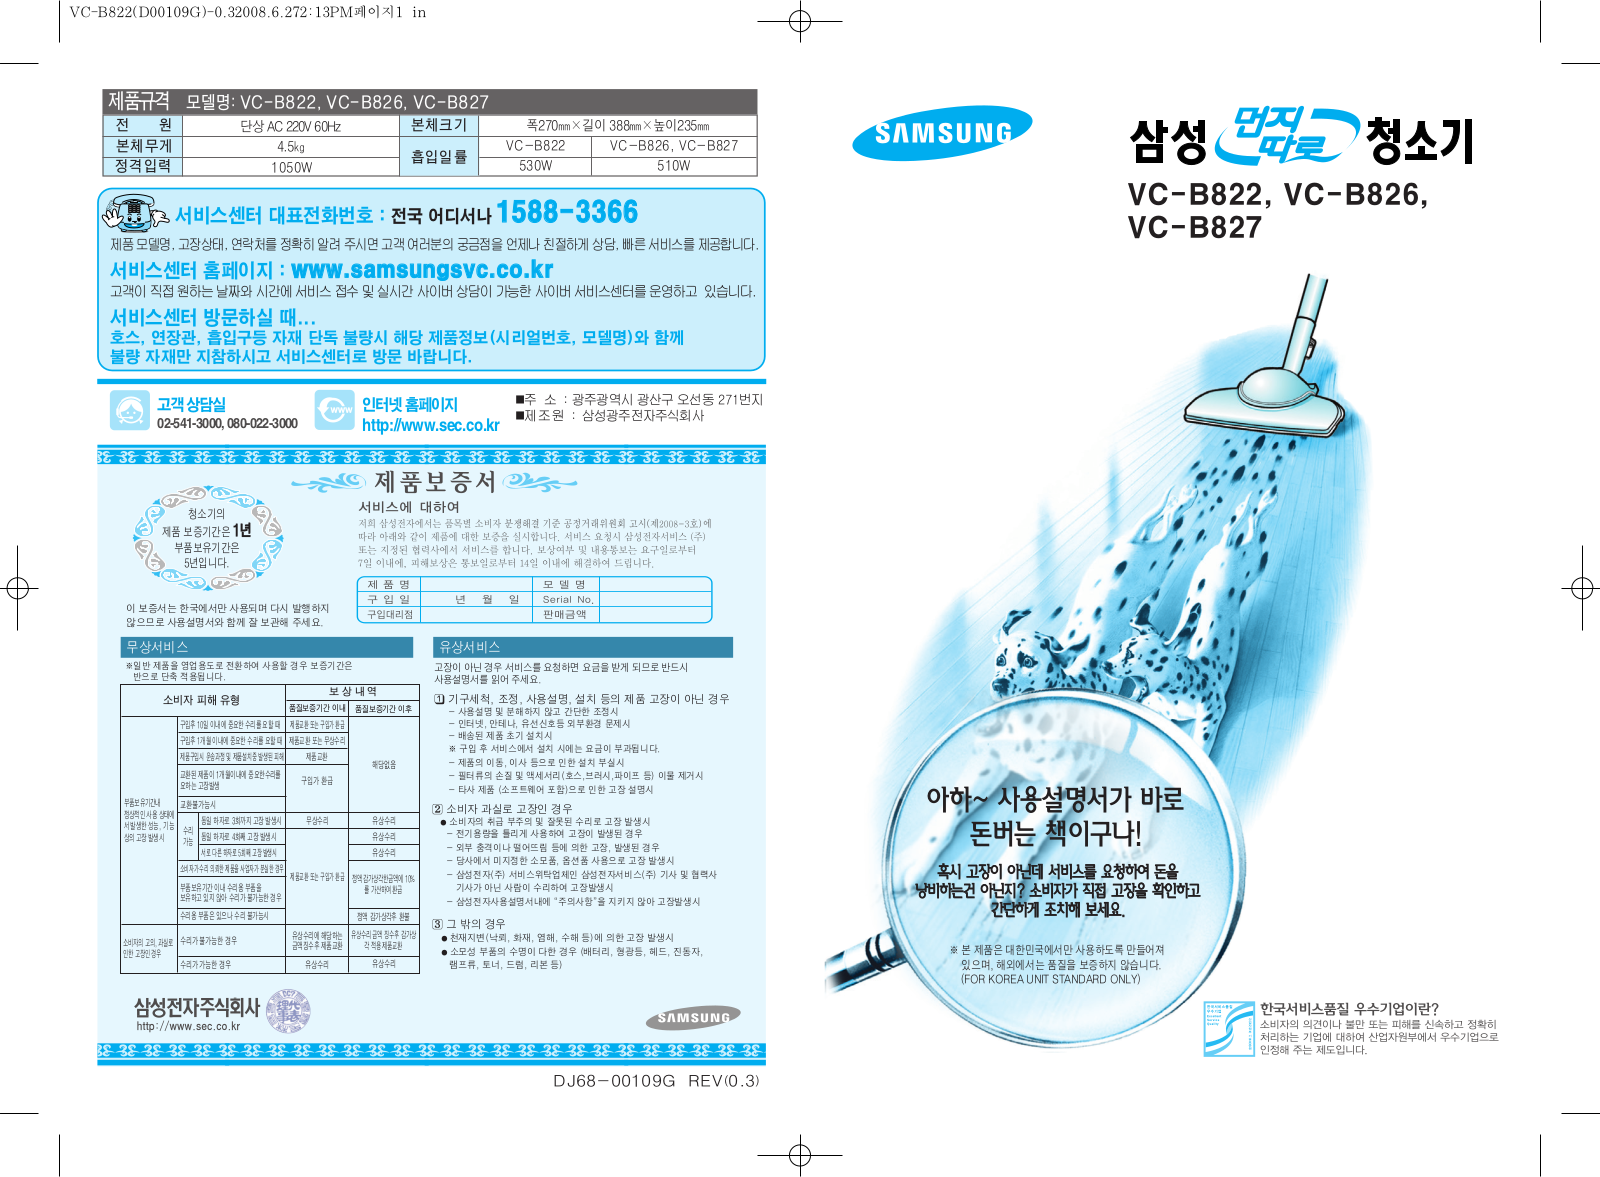 Samsung VC-B822, VC-B827, VC-B826 INTRODUCTION